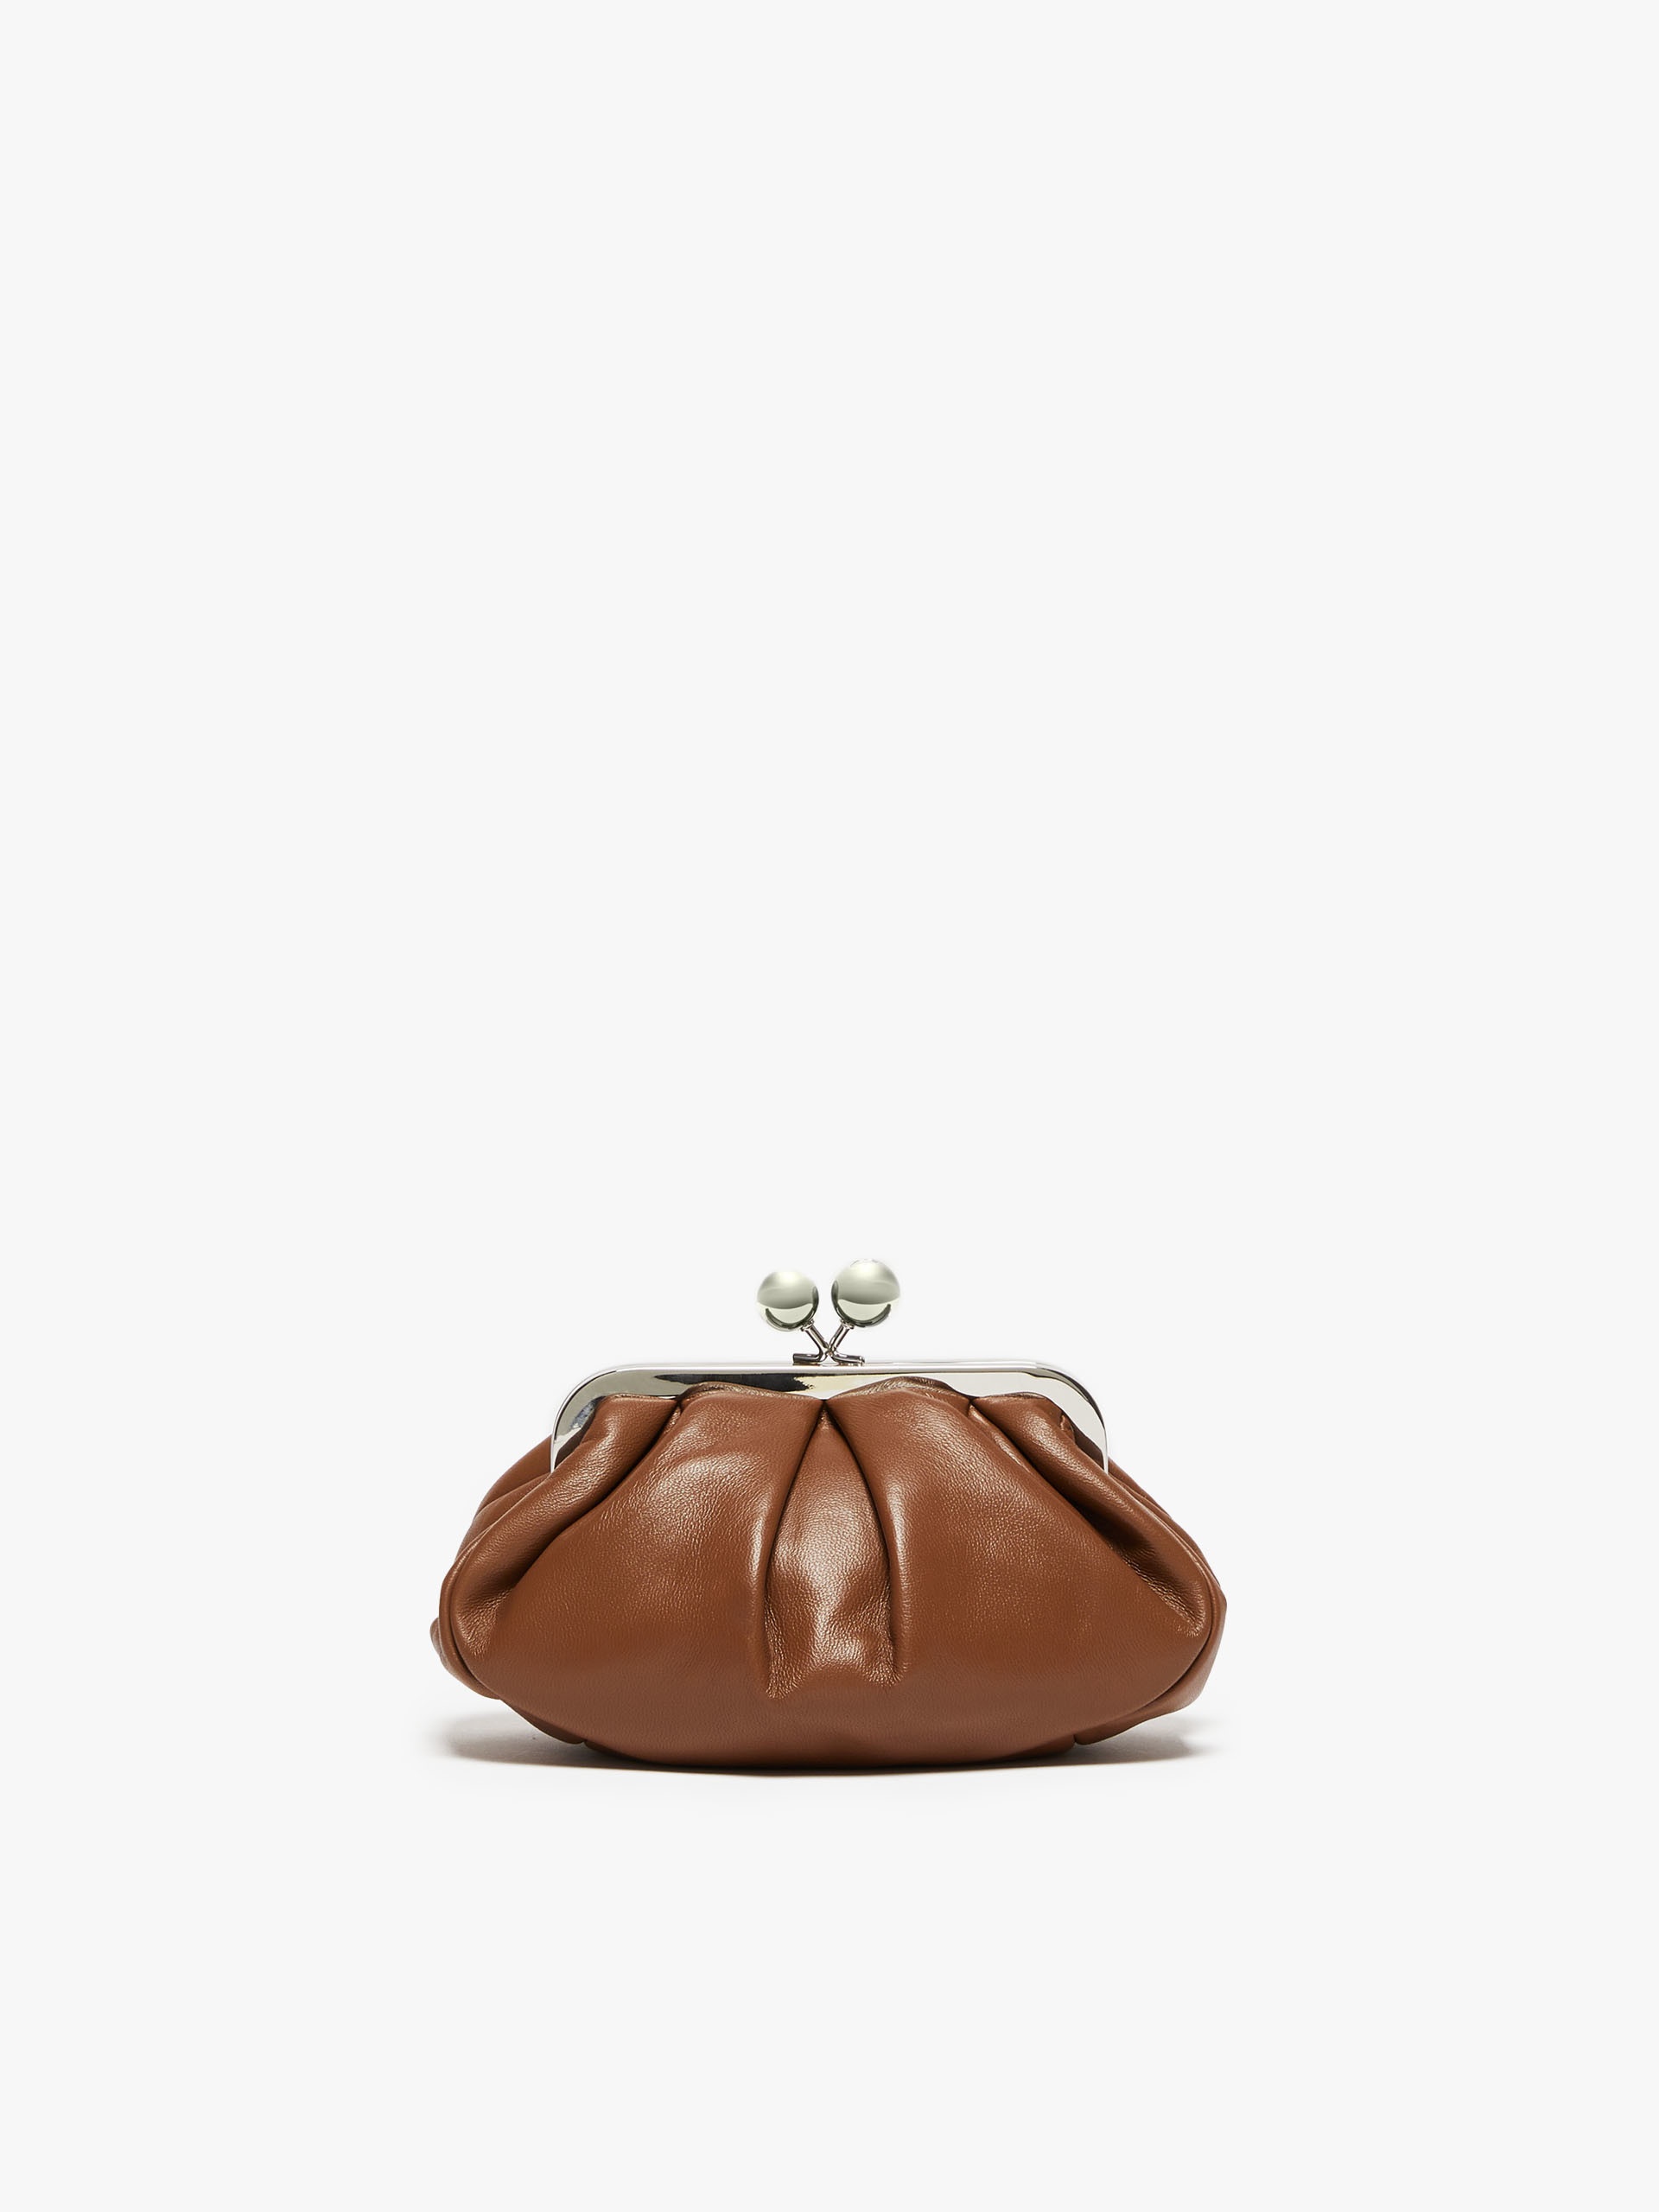 PRATI Small Pasticcino Bag in nappa leather - 3